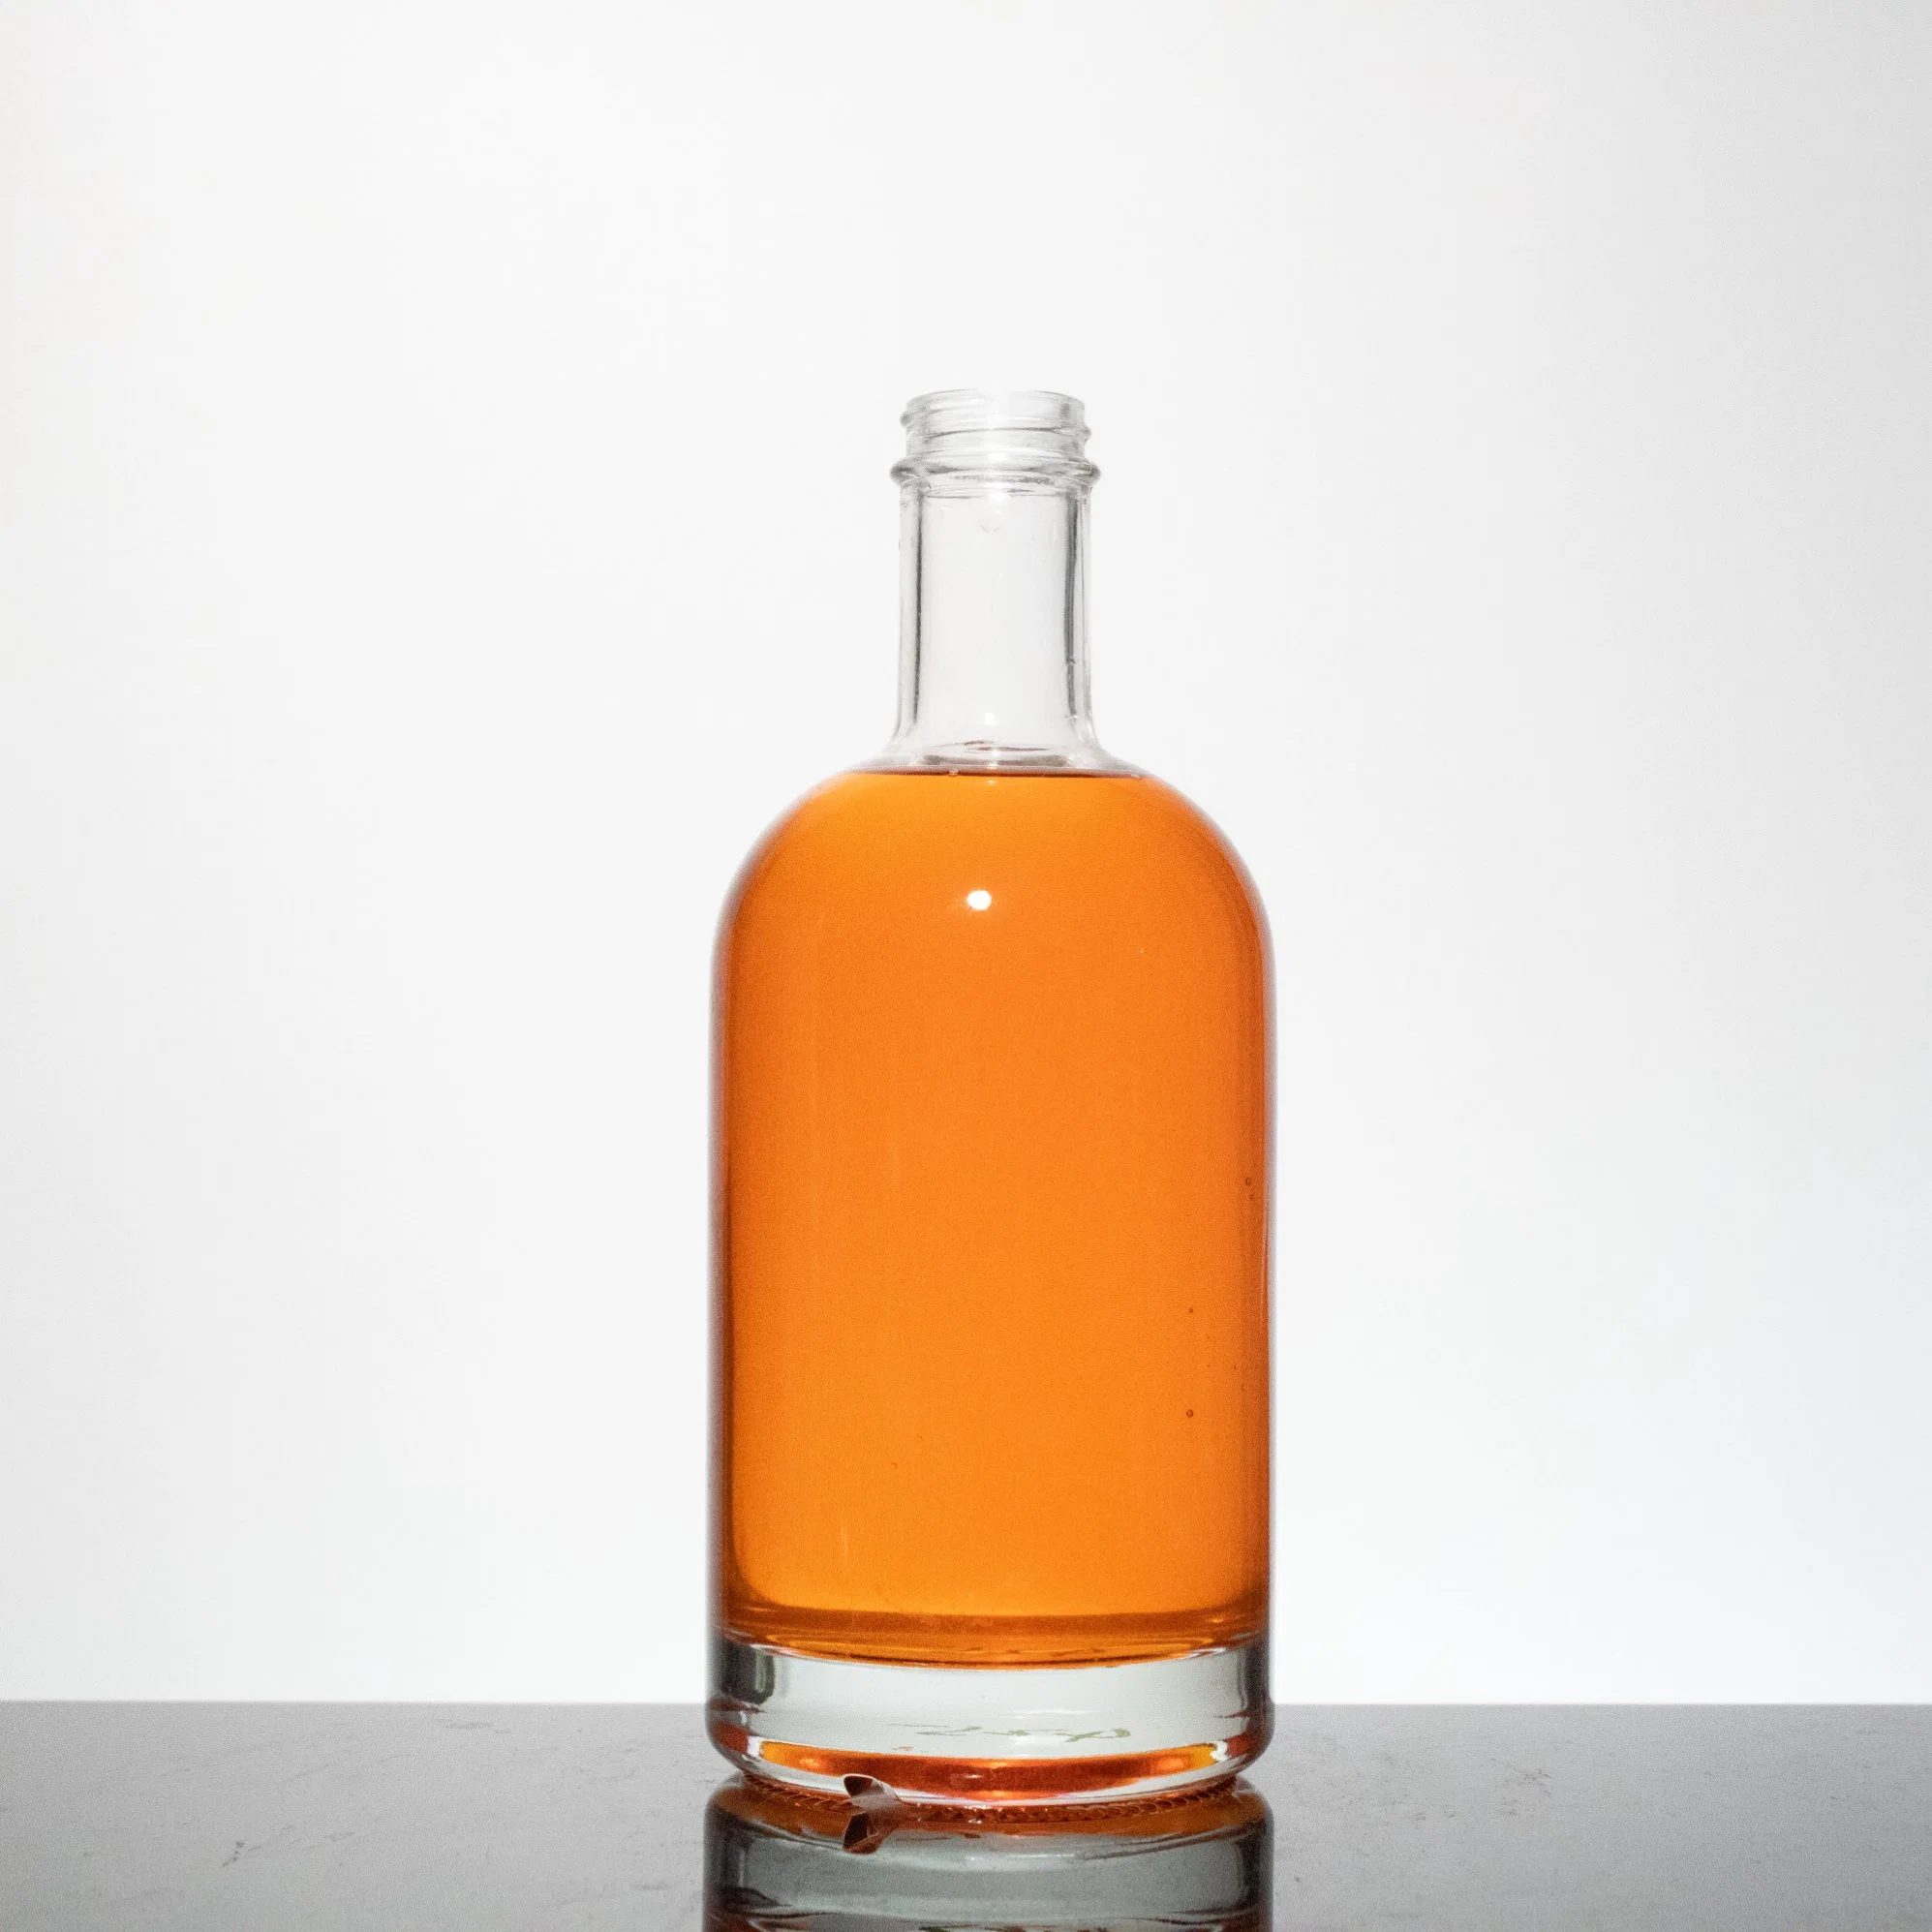 Großhandel/Lieferant 700ml 750ml 500ml Clear Round leer Rum Whisky Spirit Gin Vodka Glas-Likörflasche mit Korkkappe